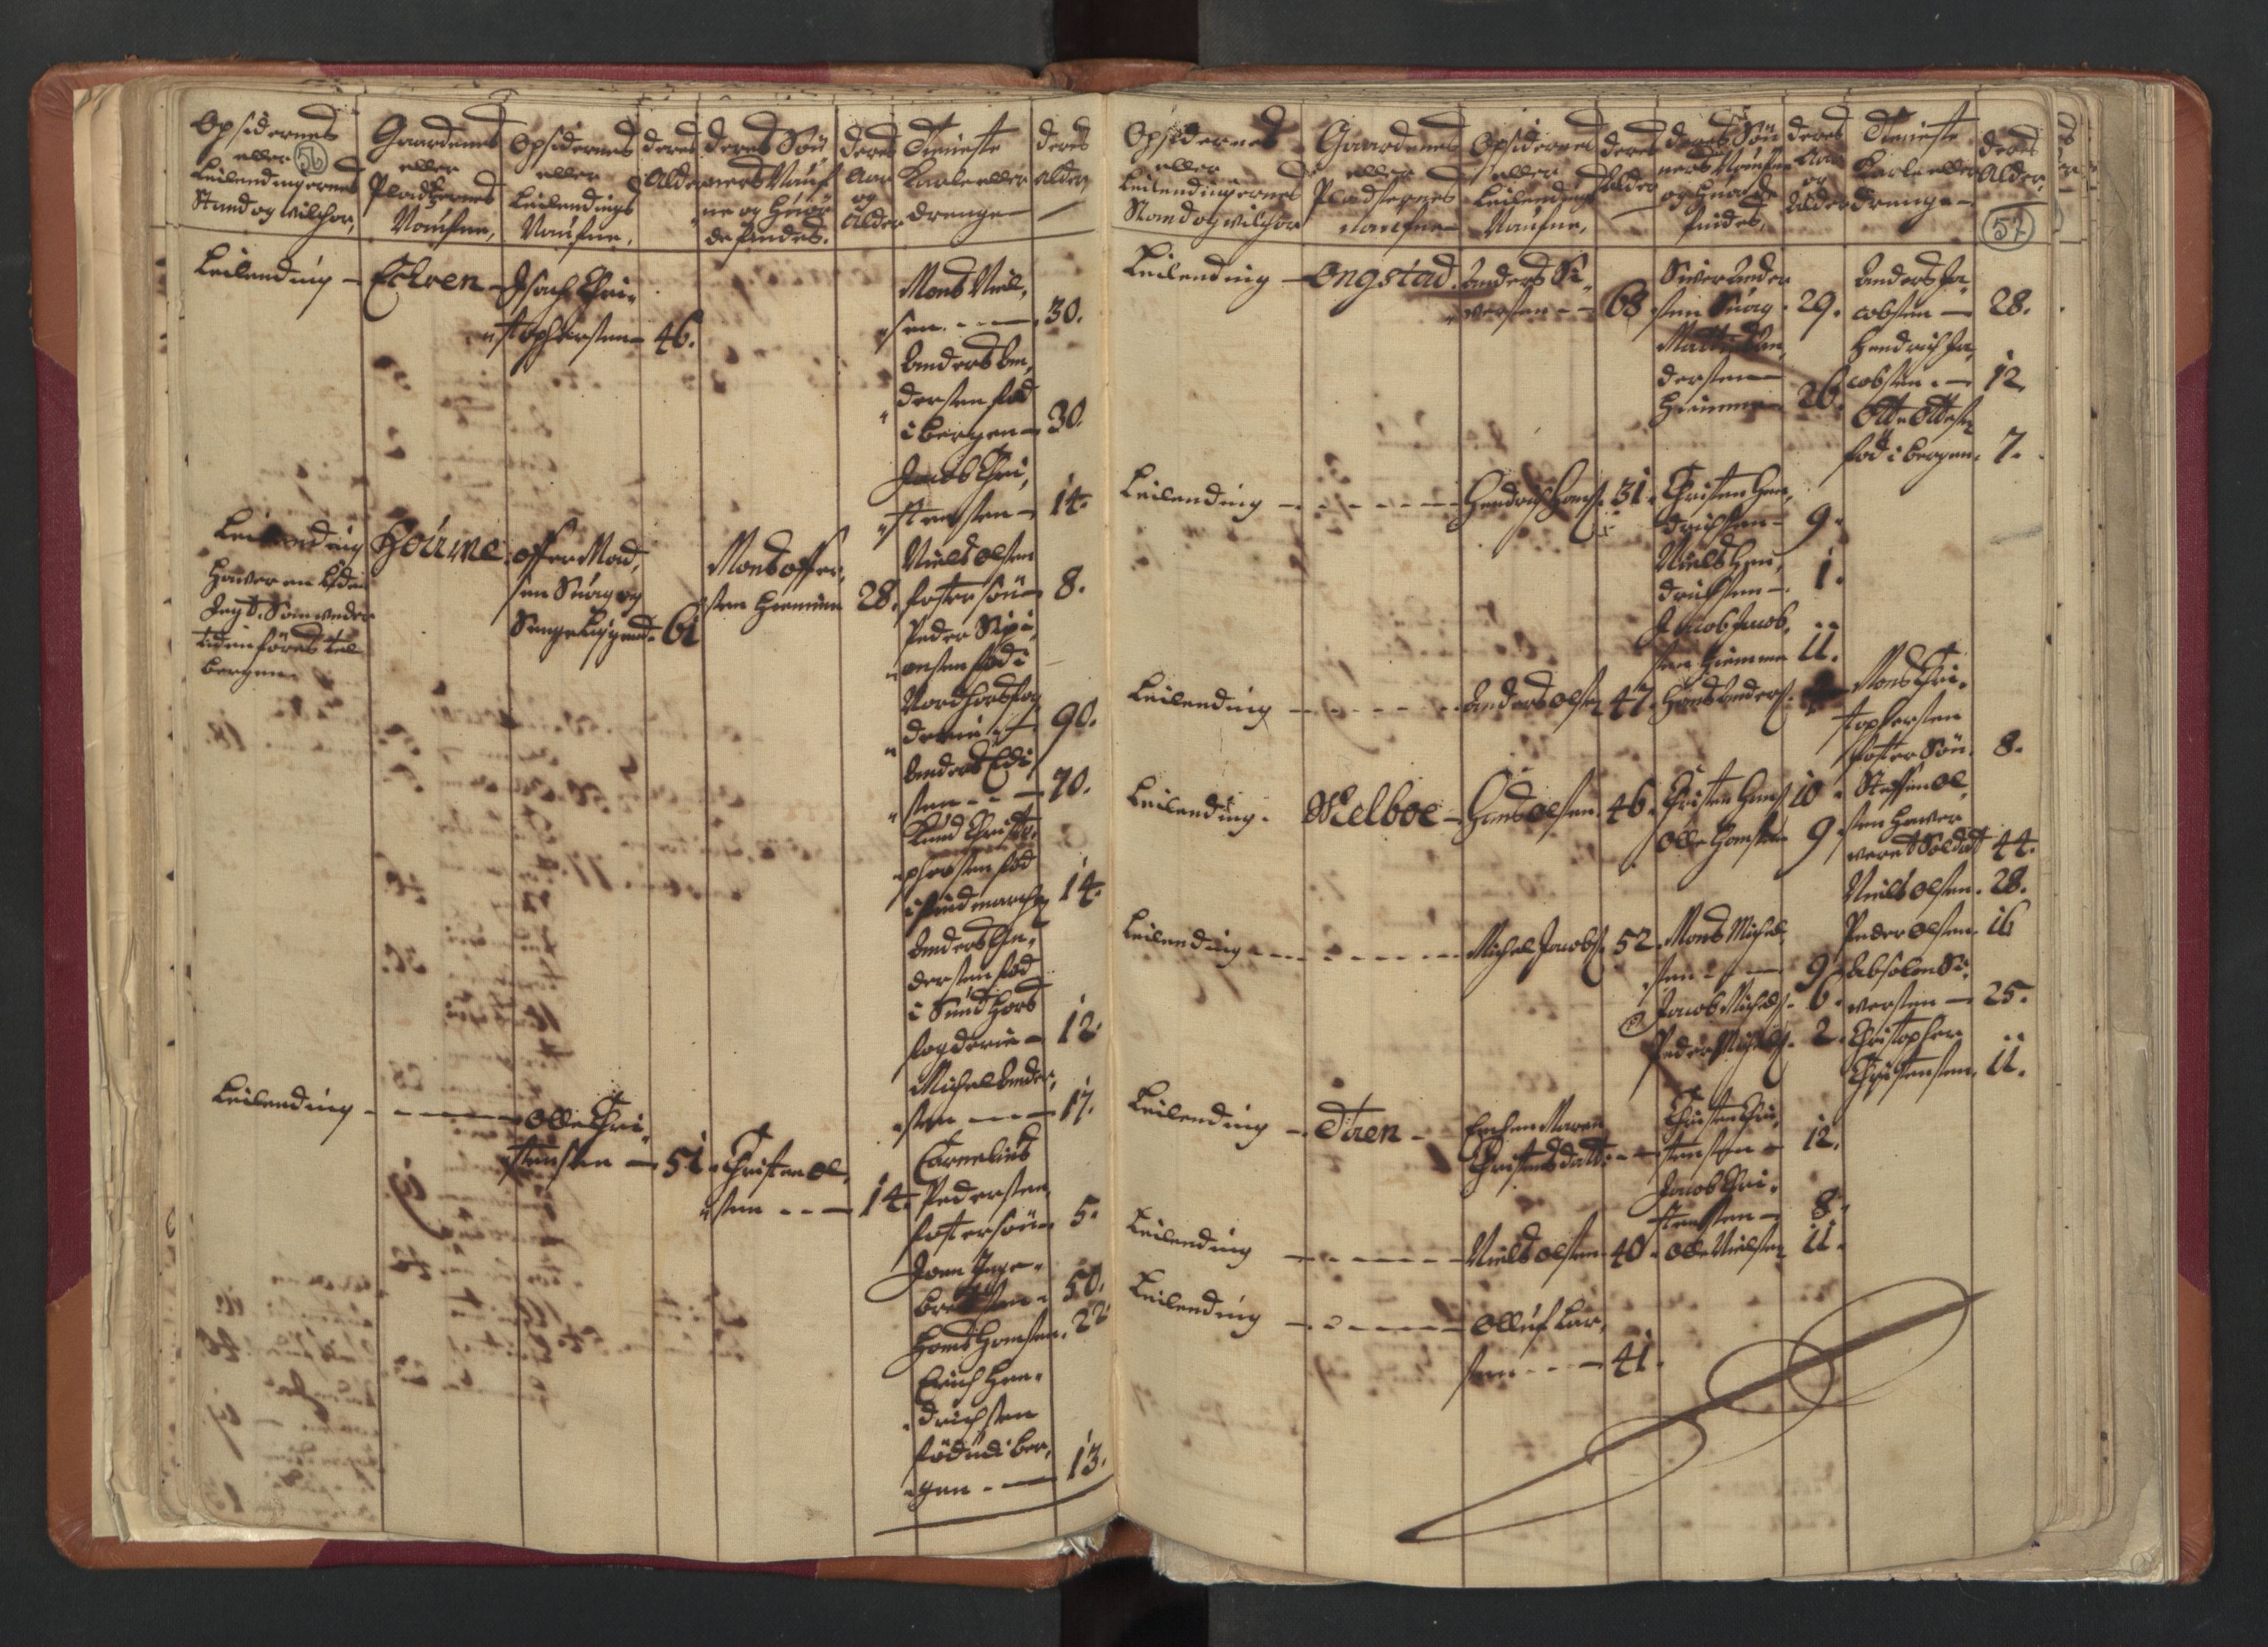 RA, Census (manntall) 1701, no. 18: Vesterålen, Andenes and Lofoten fogderi, 1701, p. 56-57